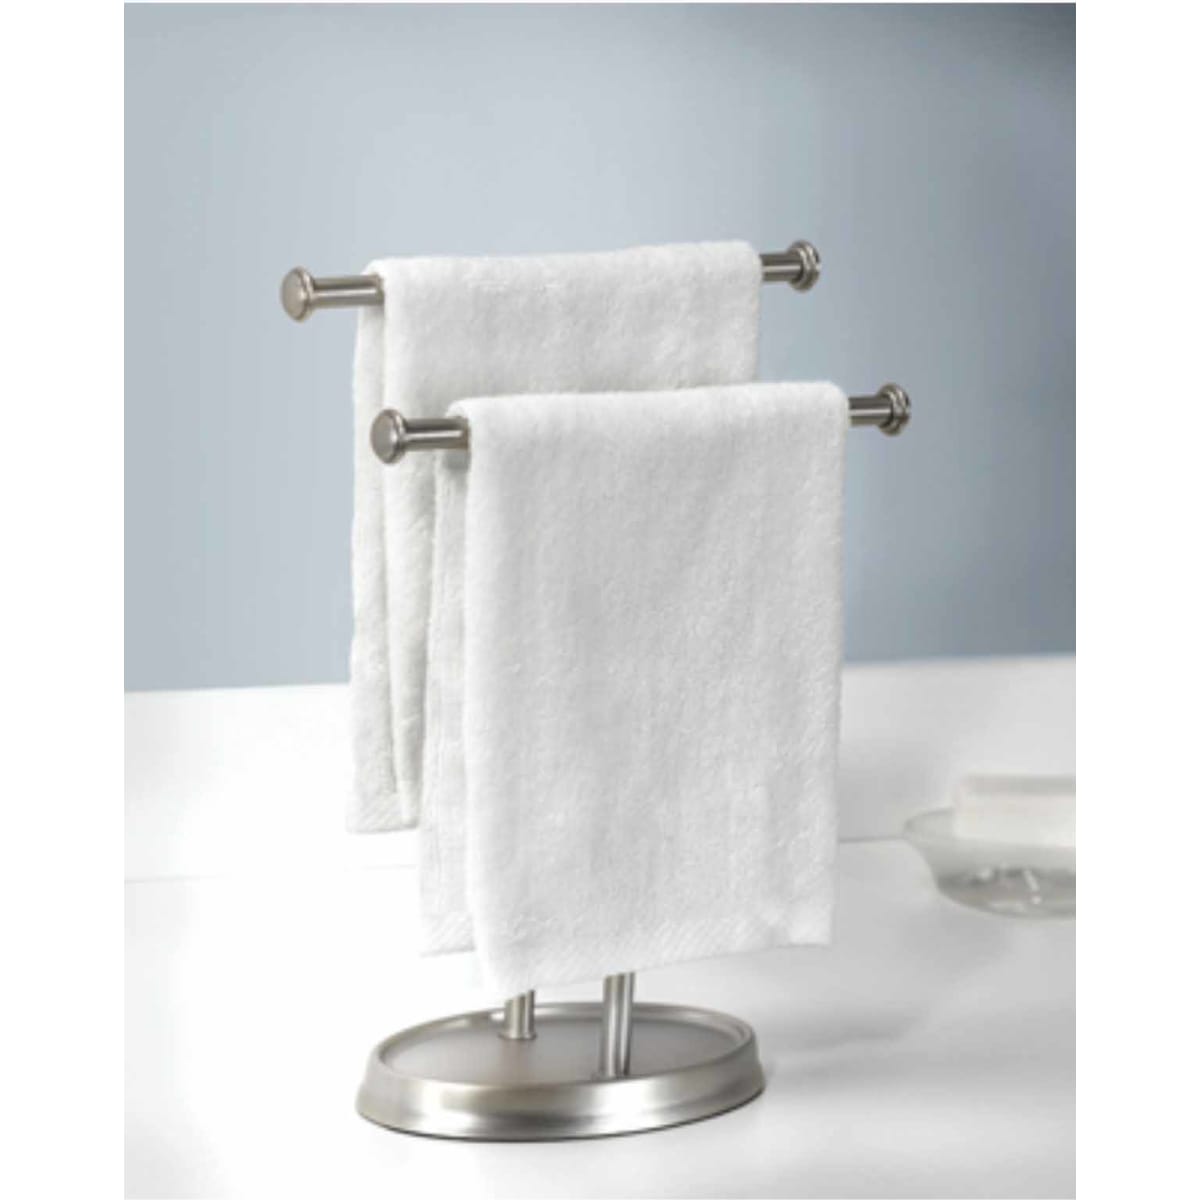 Umbra Metal Nickel Paper Towel Holder